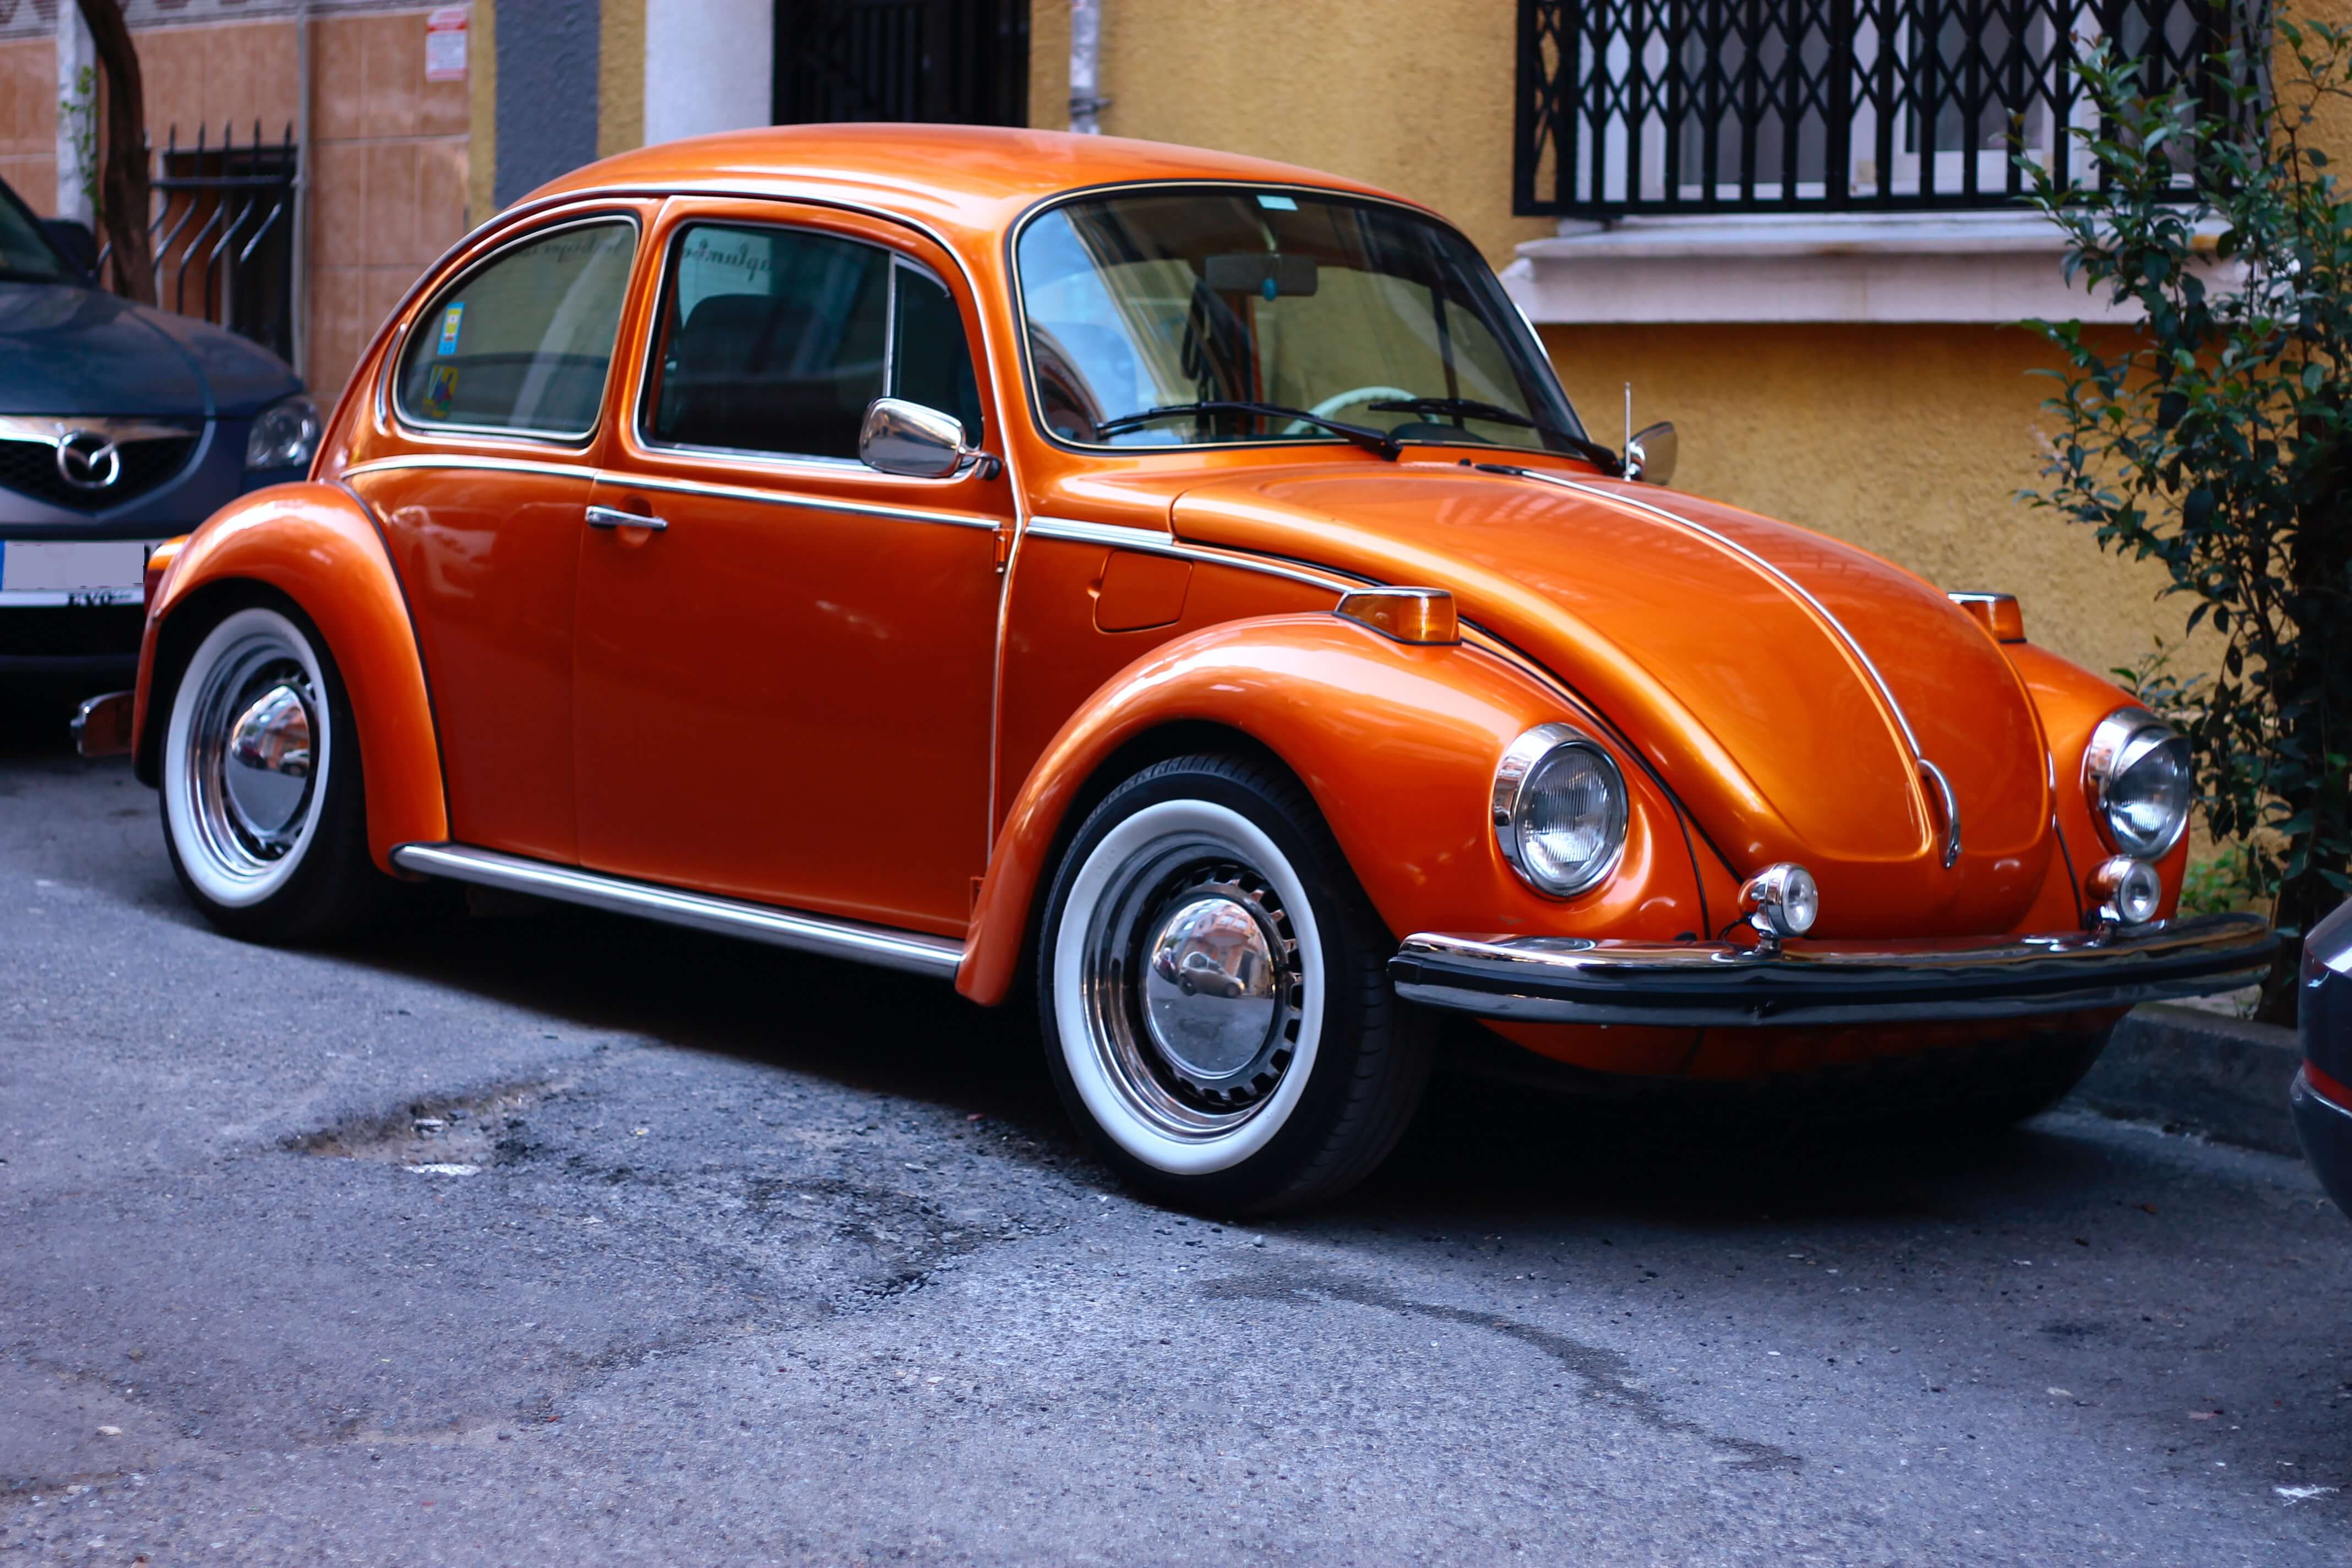 Una imagen de un Volkswagen Escarabajo naranja, que captura el color vibrante y llamativo del icónico coche compacto, evocando una sensación de diversión, estilo retro y nostalgia.